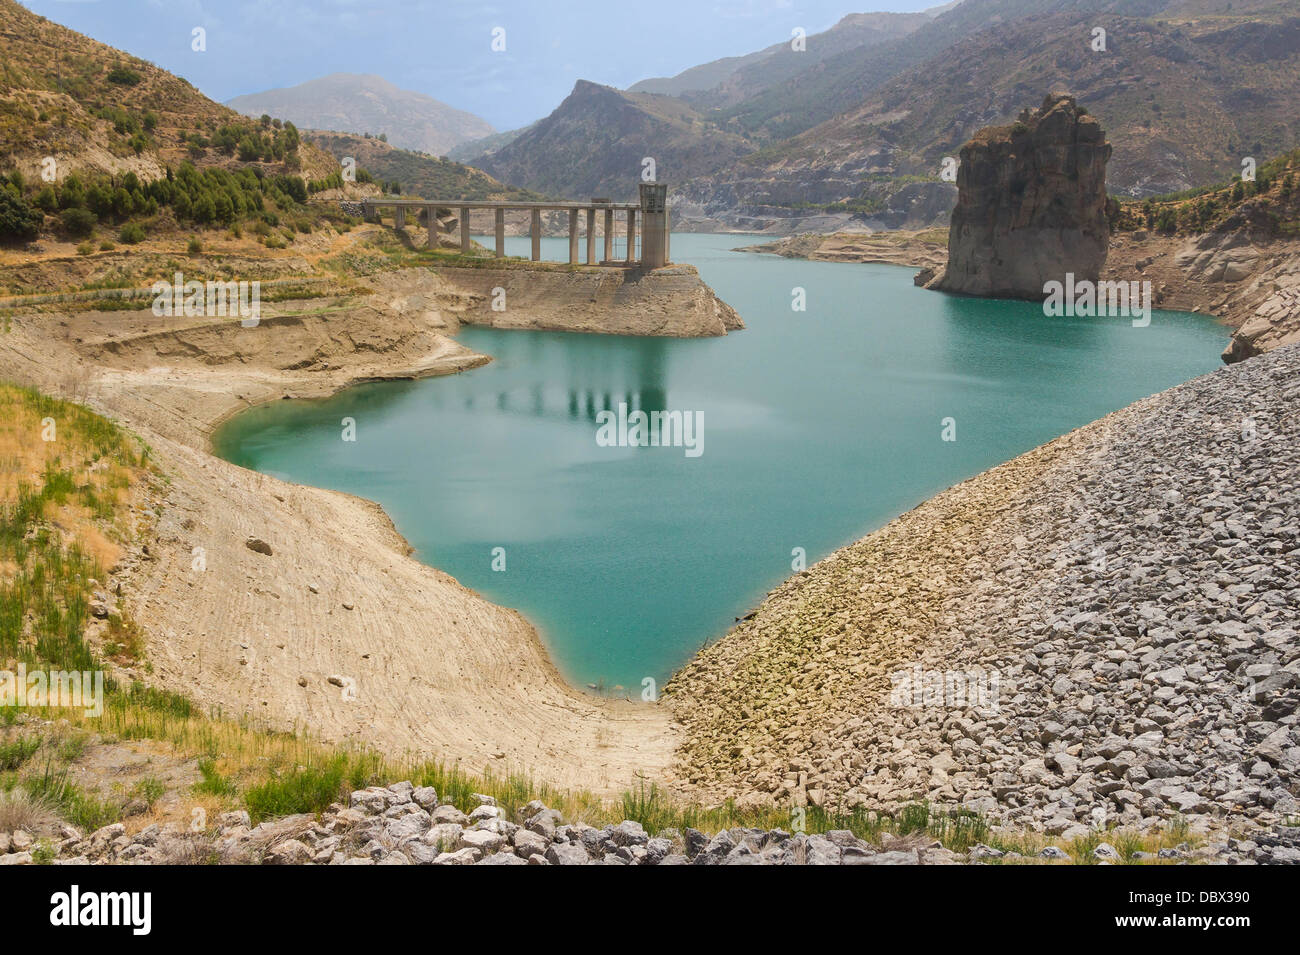 'L'embalse de Canales', comme vu du barrage sur la rivière Genil, août 2012, la Sierra Nevada, Andalousie, espagne. Banque D'Images